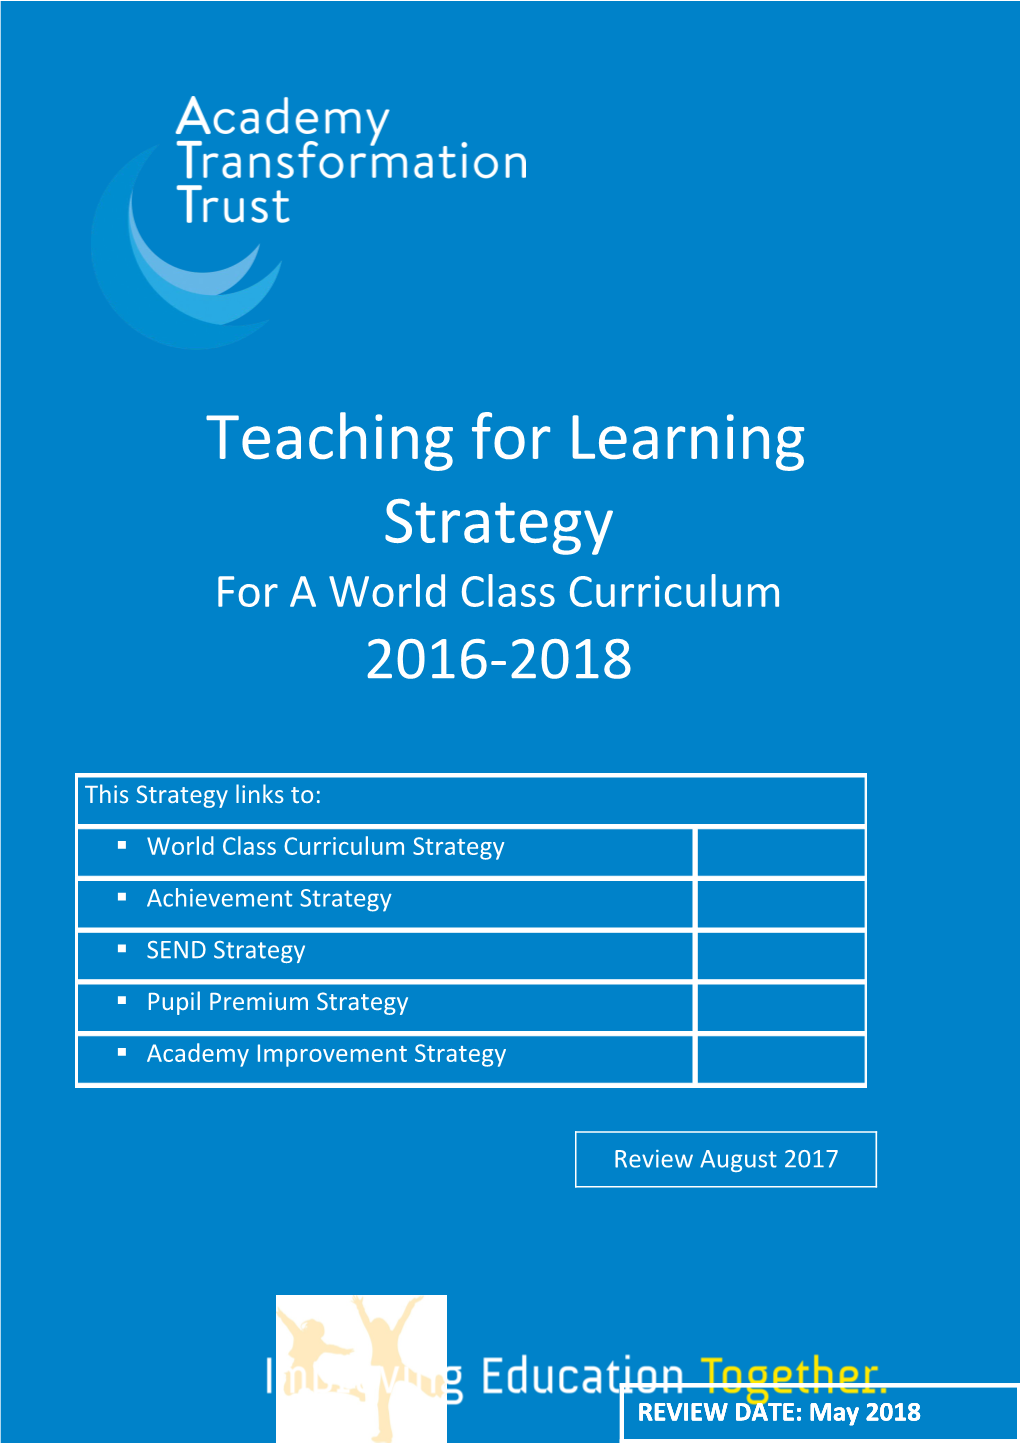 World Class Curriculum Strategy